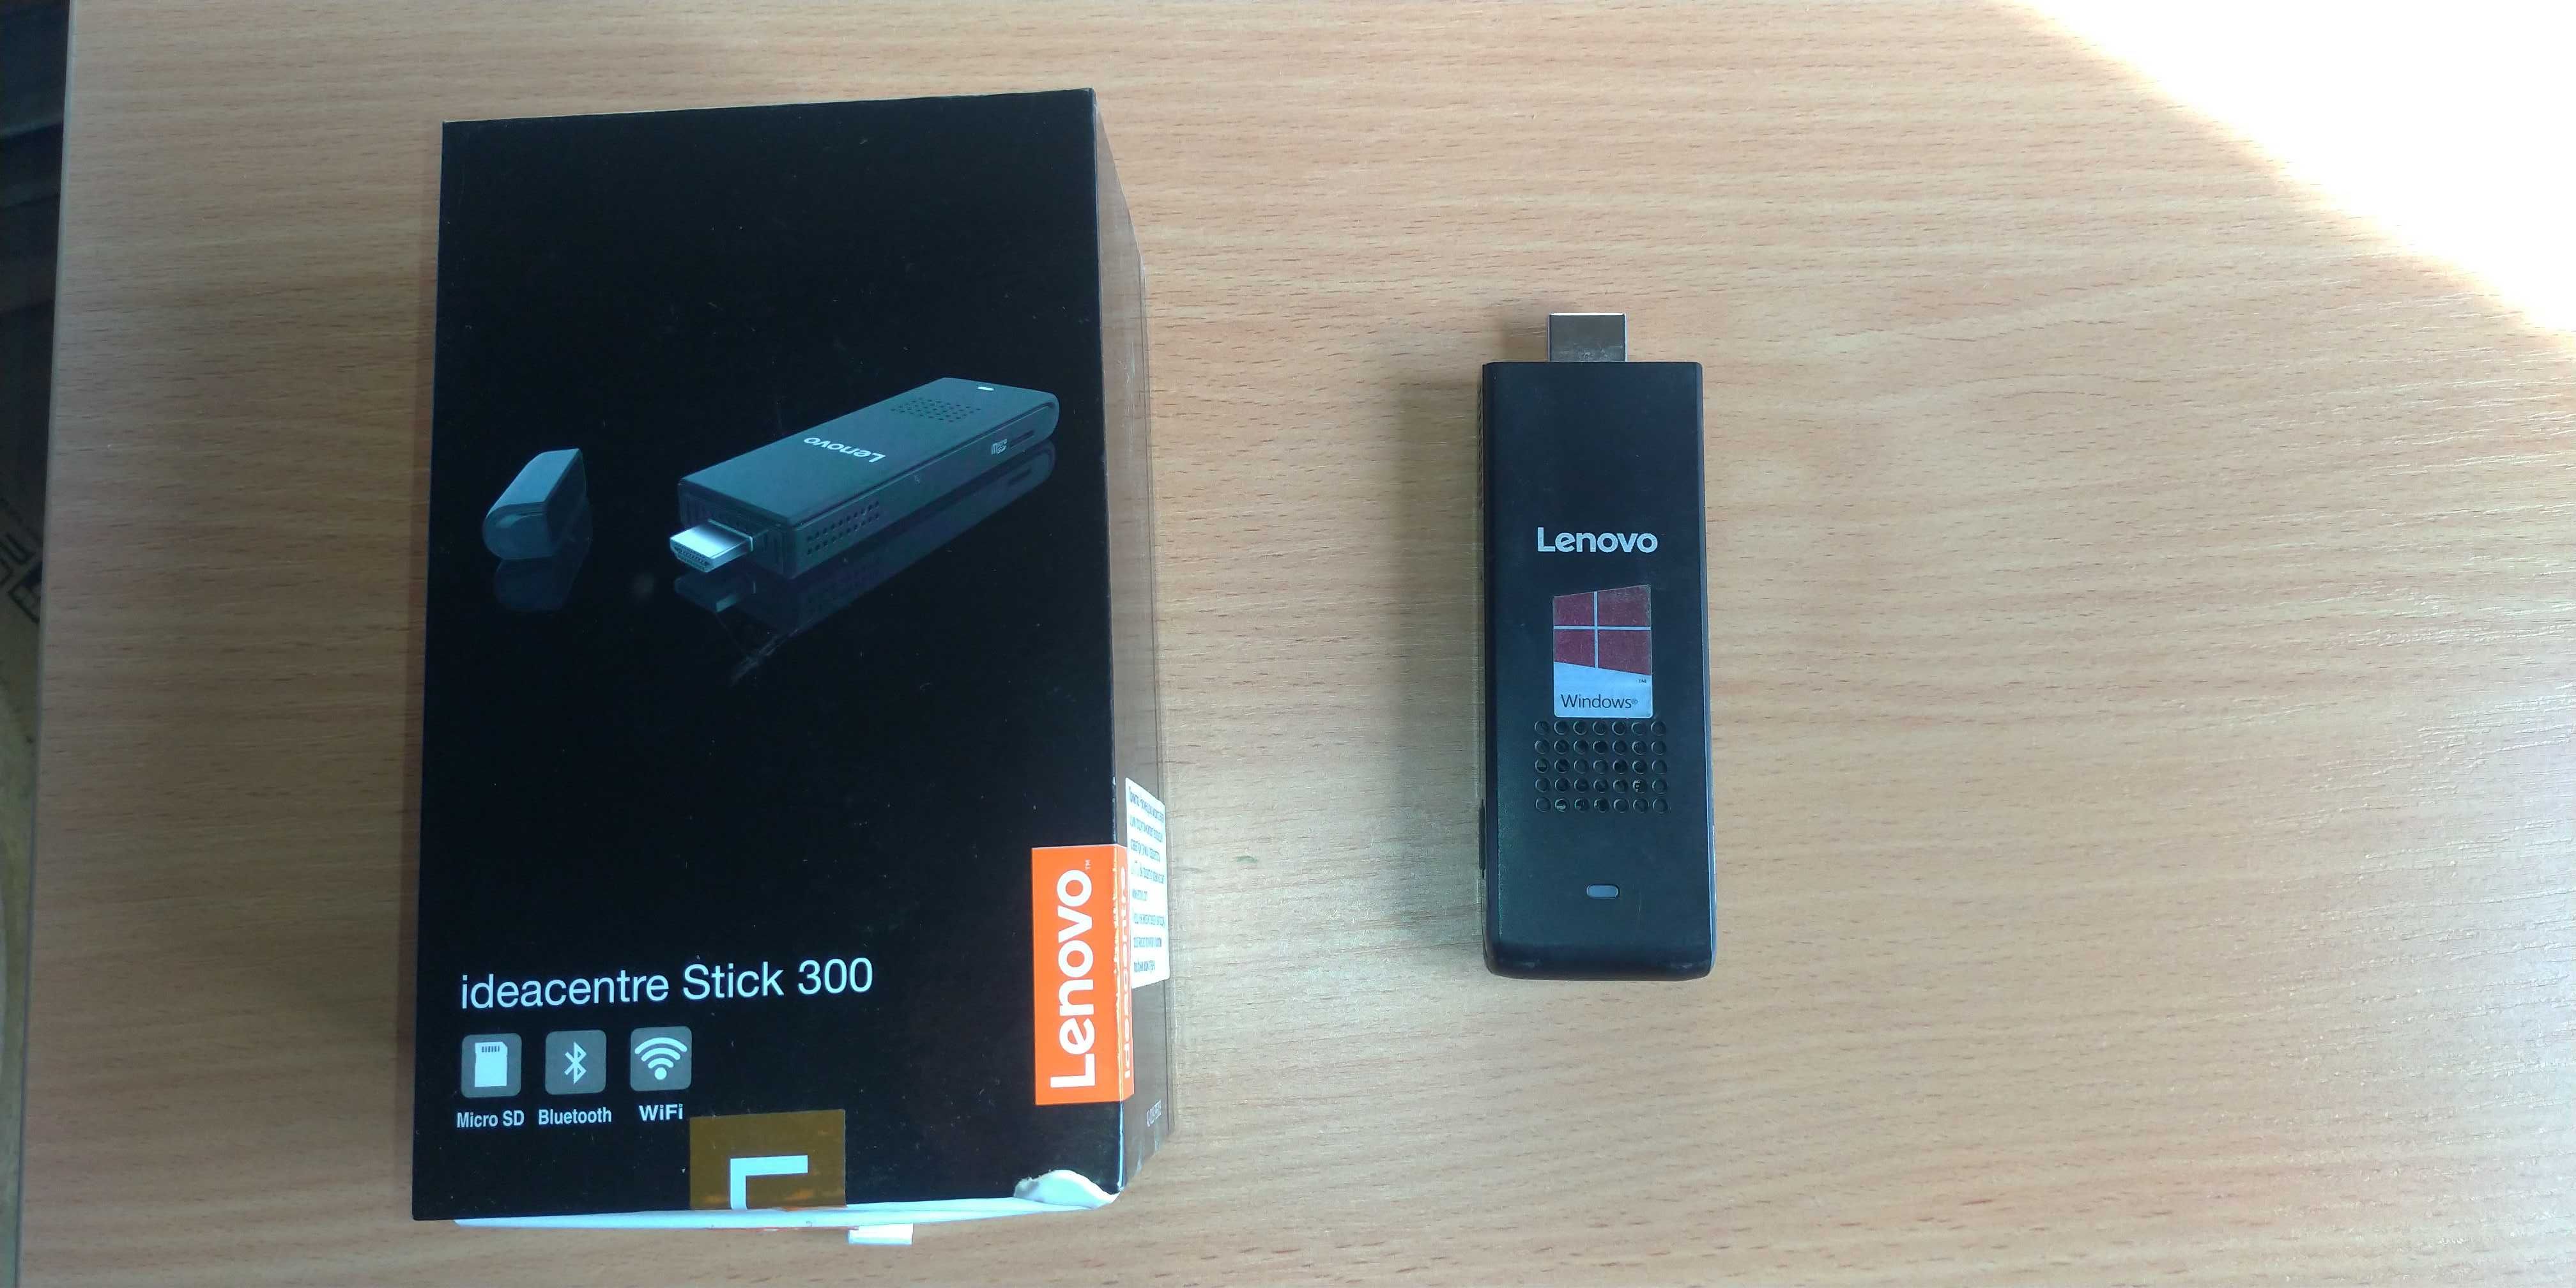 Компьютер HDMI мини ПК Lenovo ideacentre Stick 300 как новый